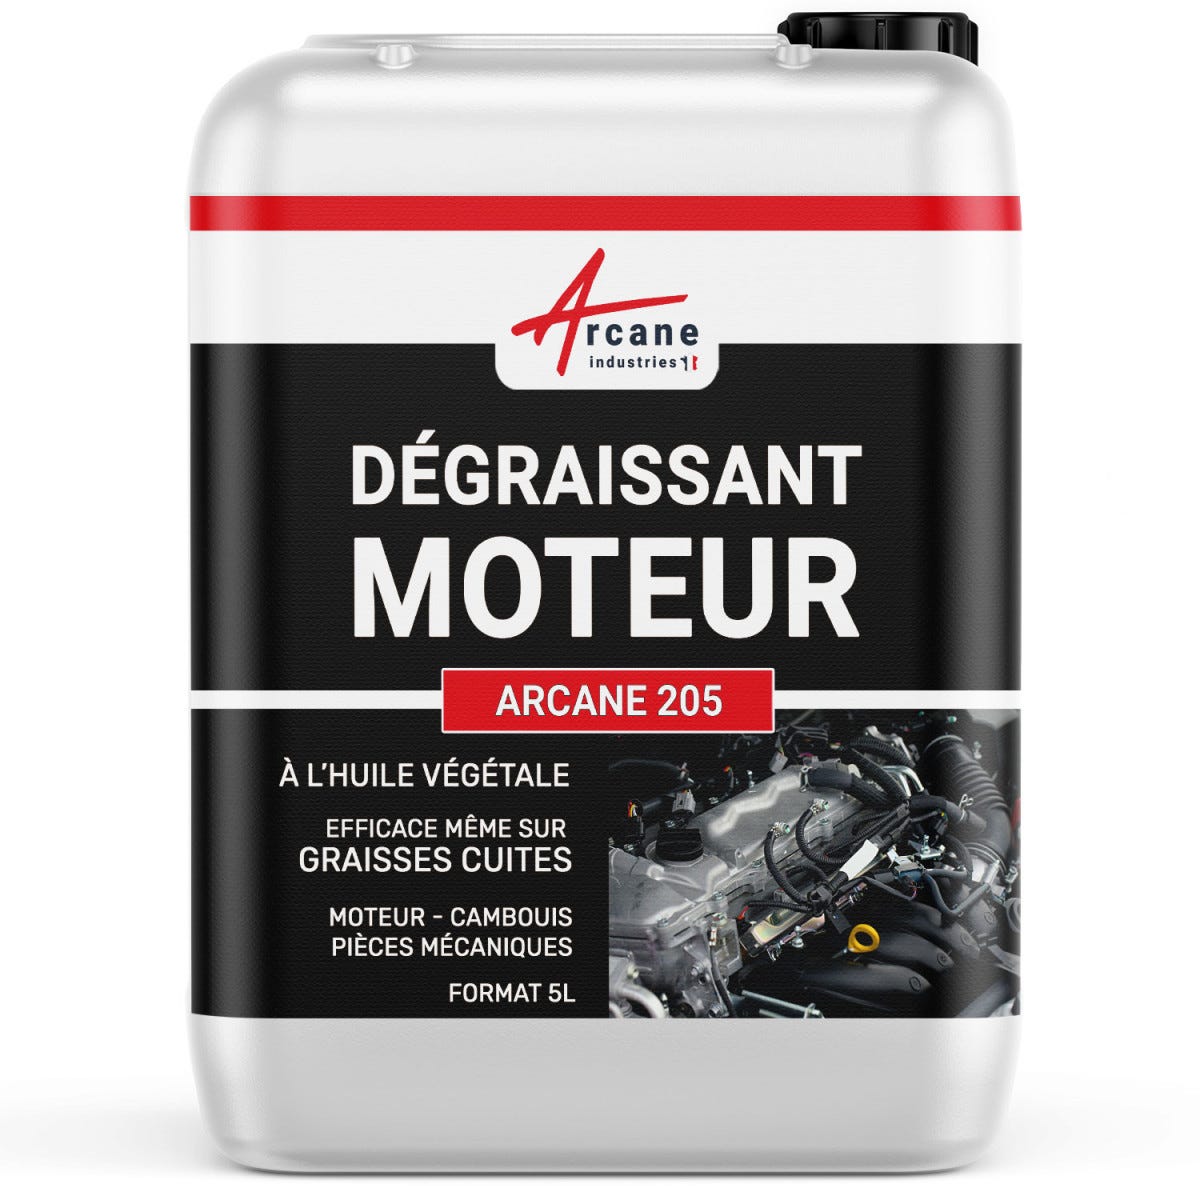 DÉGRAISSANT MOTEURS - Dégraissant moteur graisses épaisses cambouis molykote Ester méthylique de colza, - 5 L - - ARCANE INDUSTRIES 3